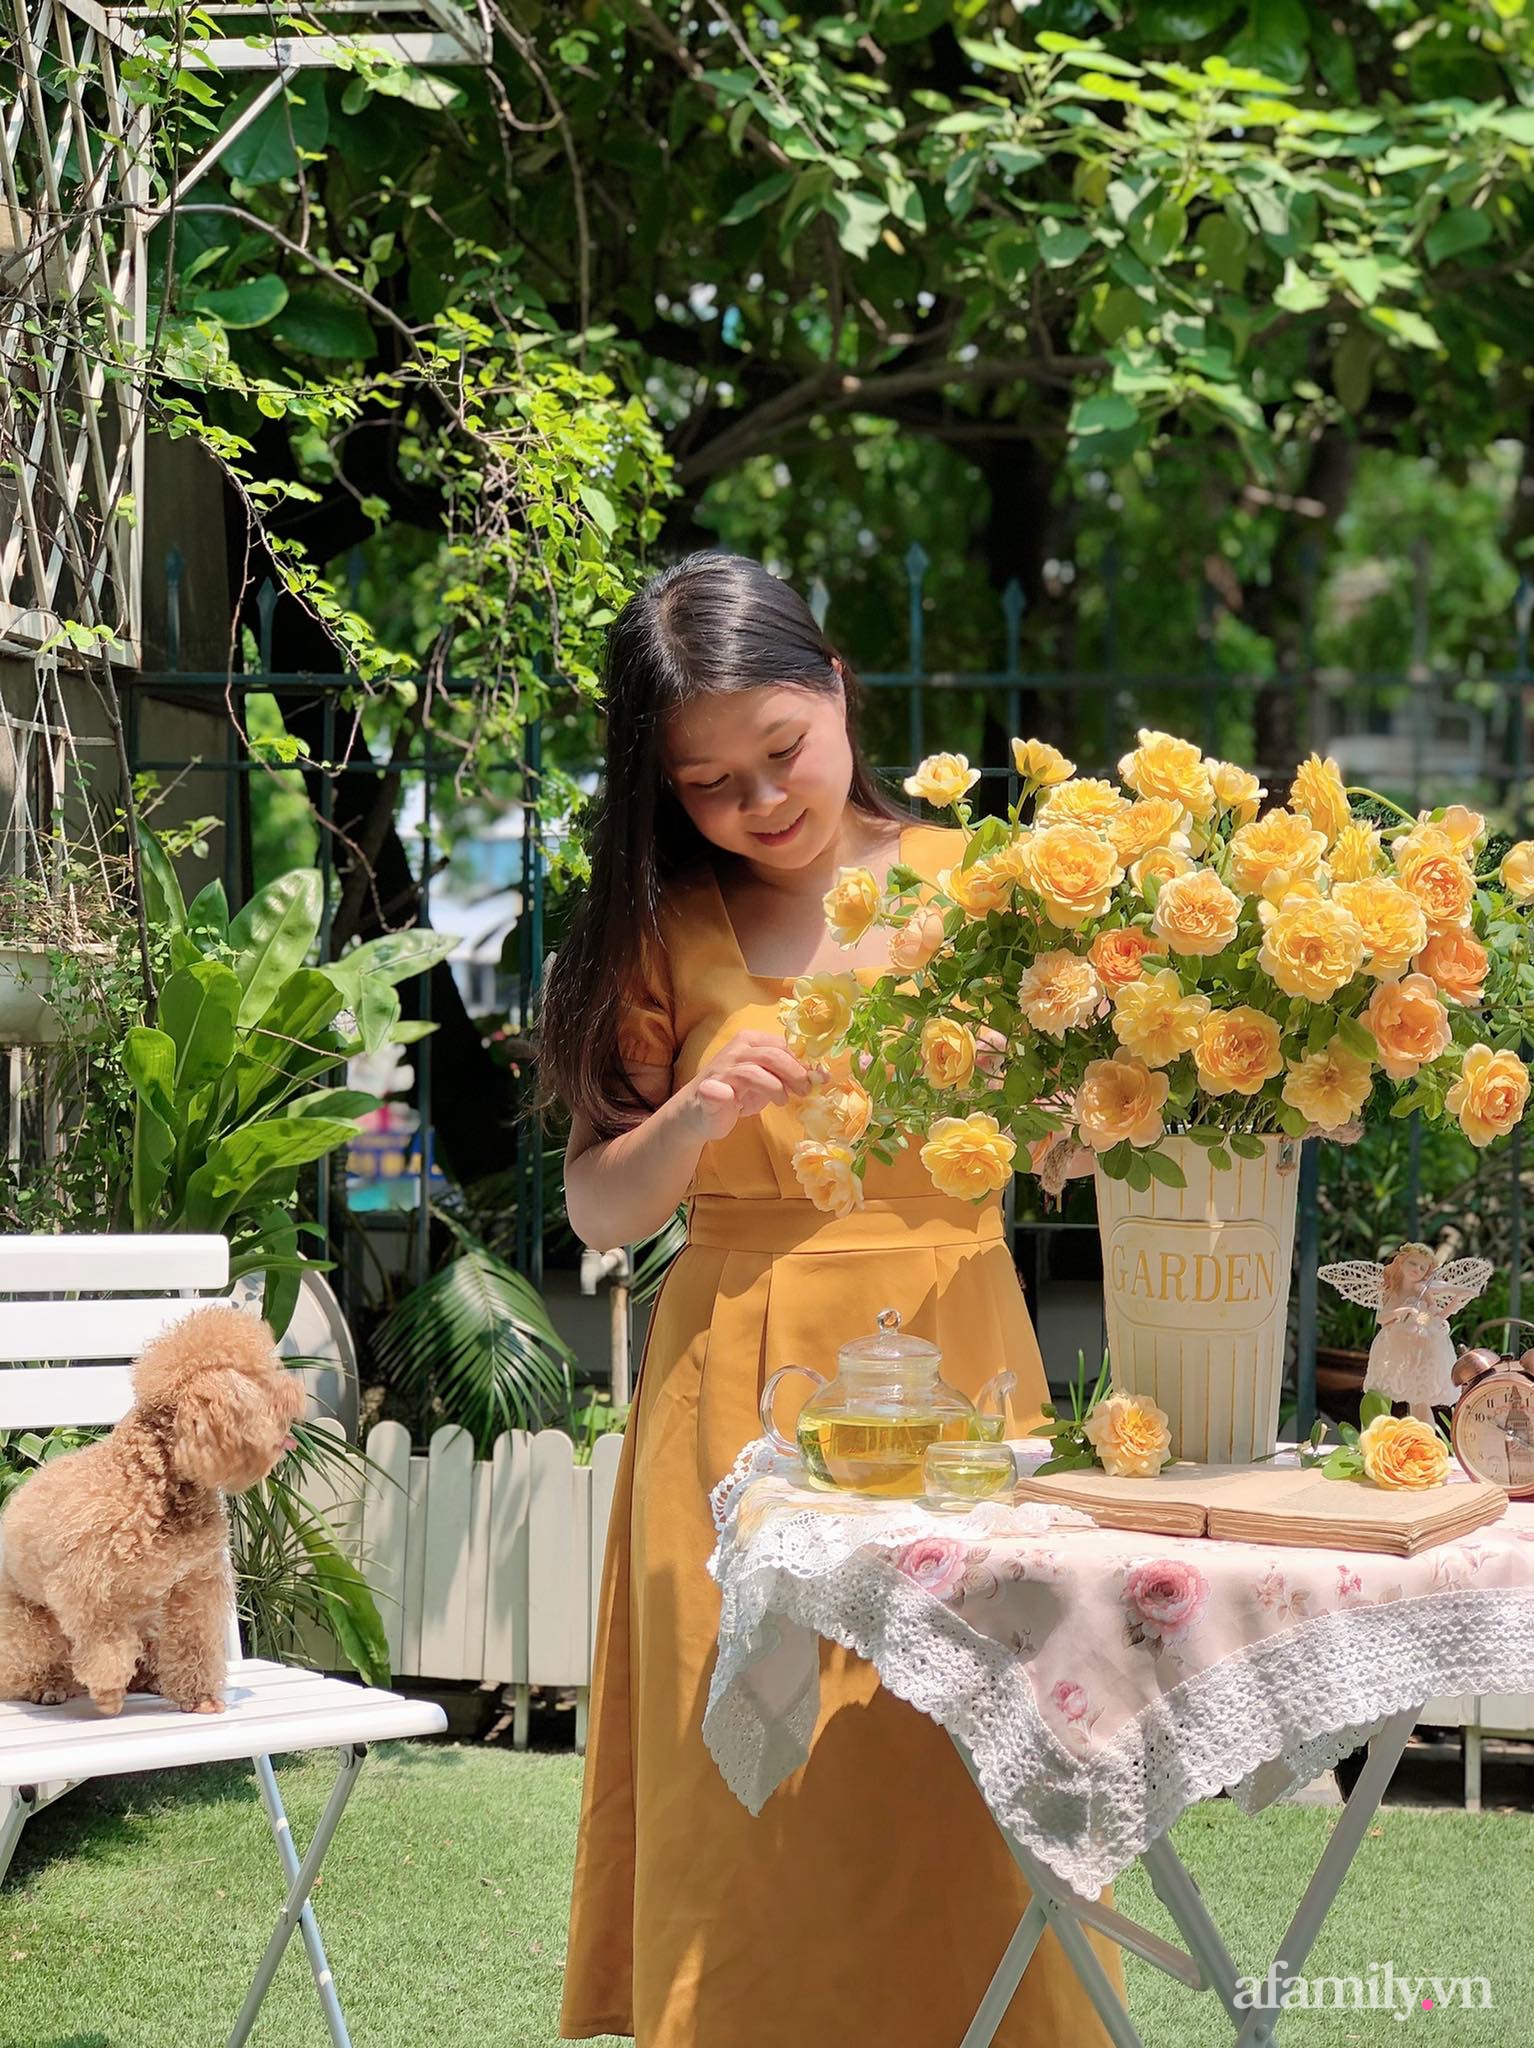 Nữ giáo viên Hà Nội cắm 100 bông hồng ngoại an yên thưởng trà những ngày giãn cách - Ảnh 3.